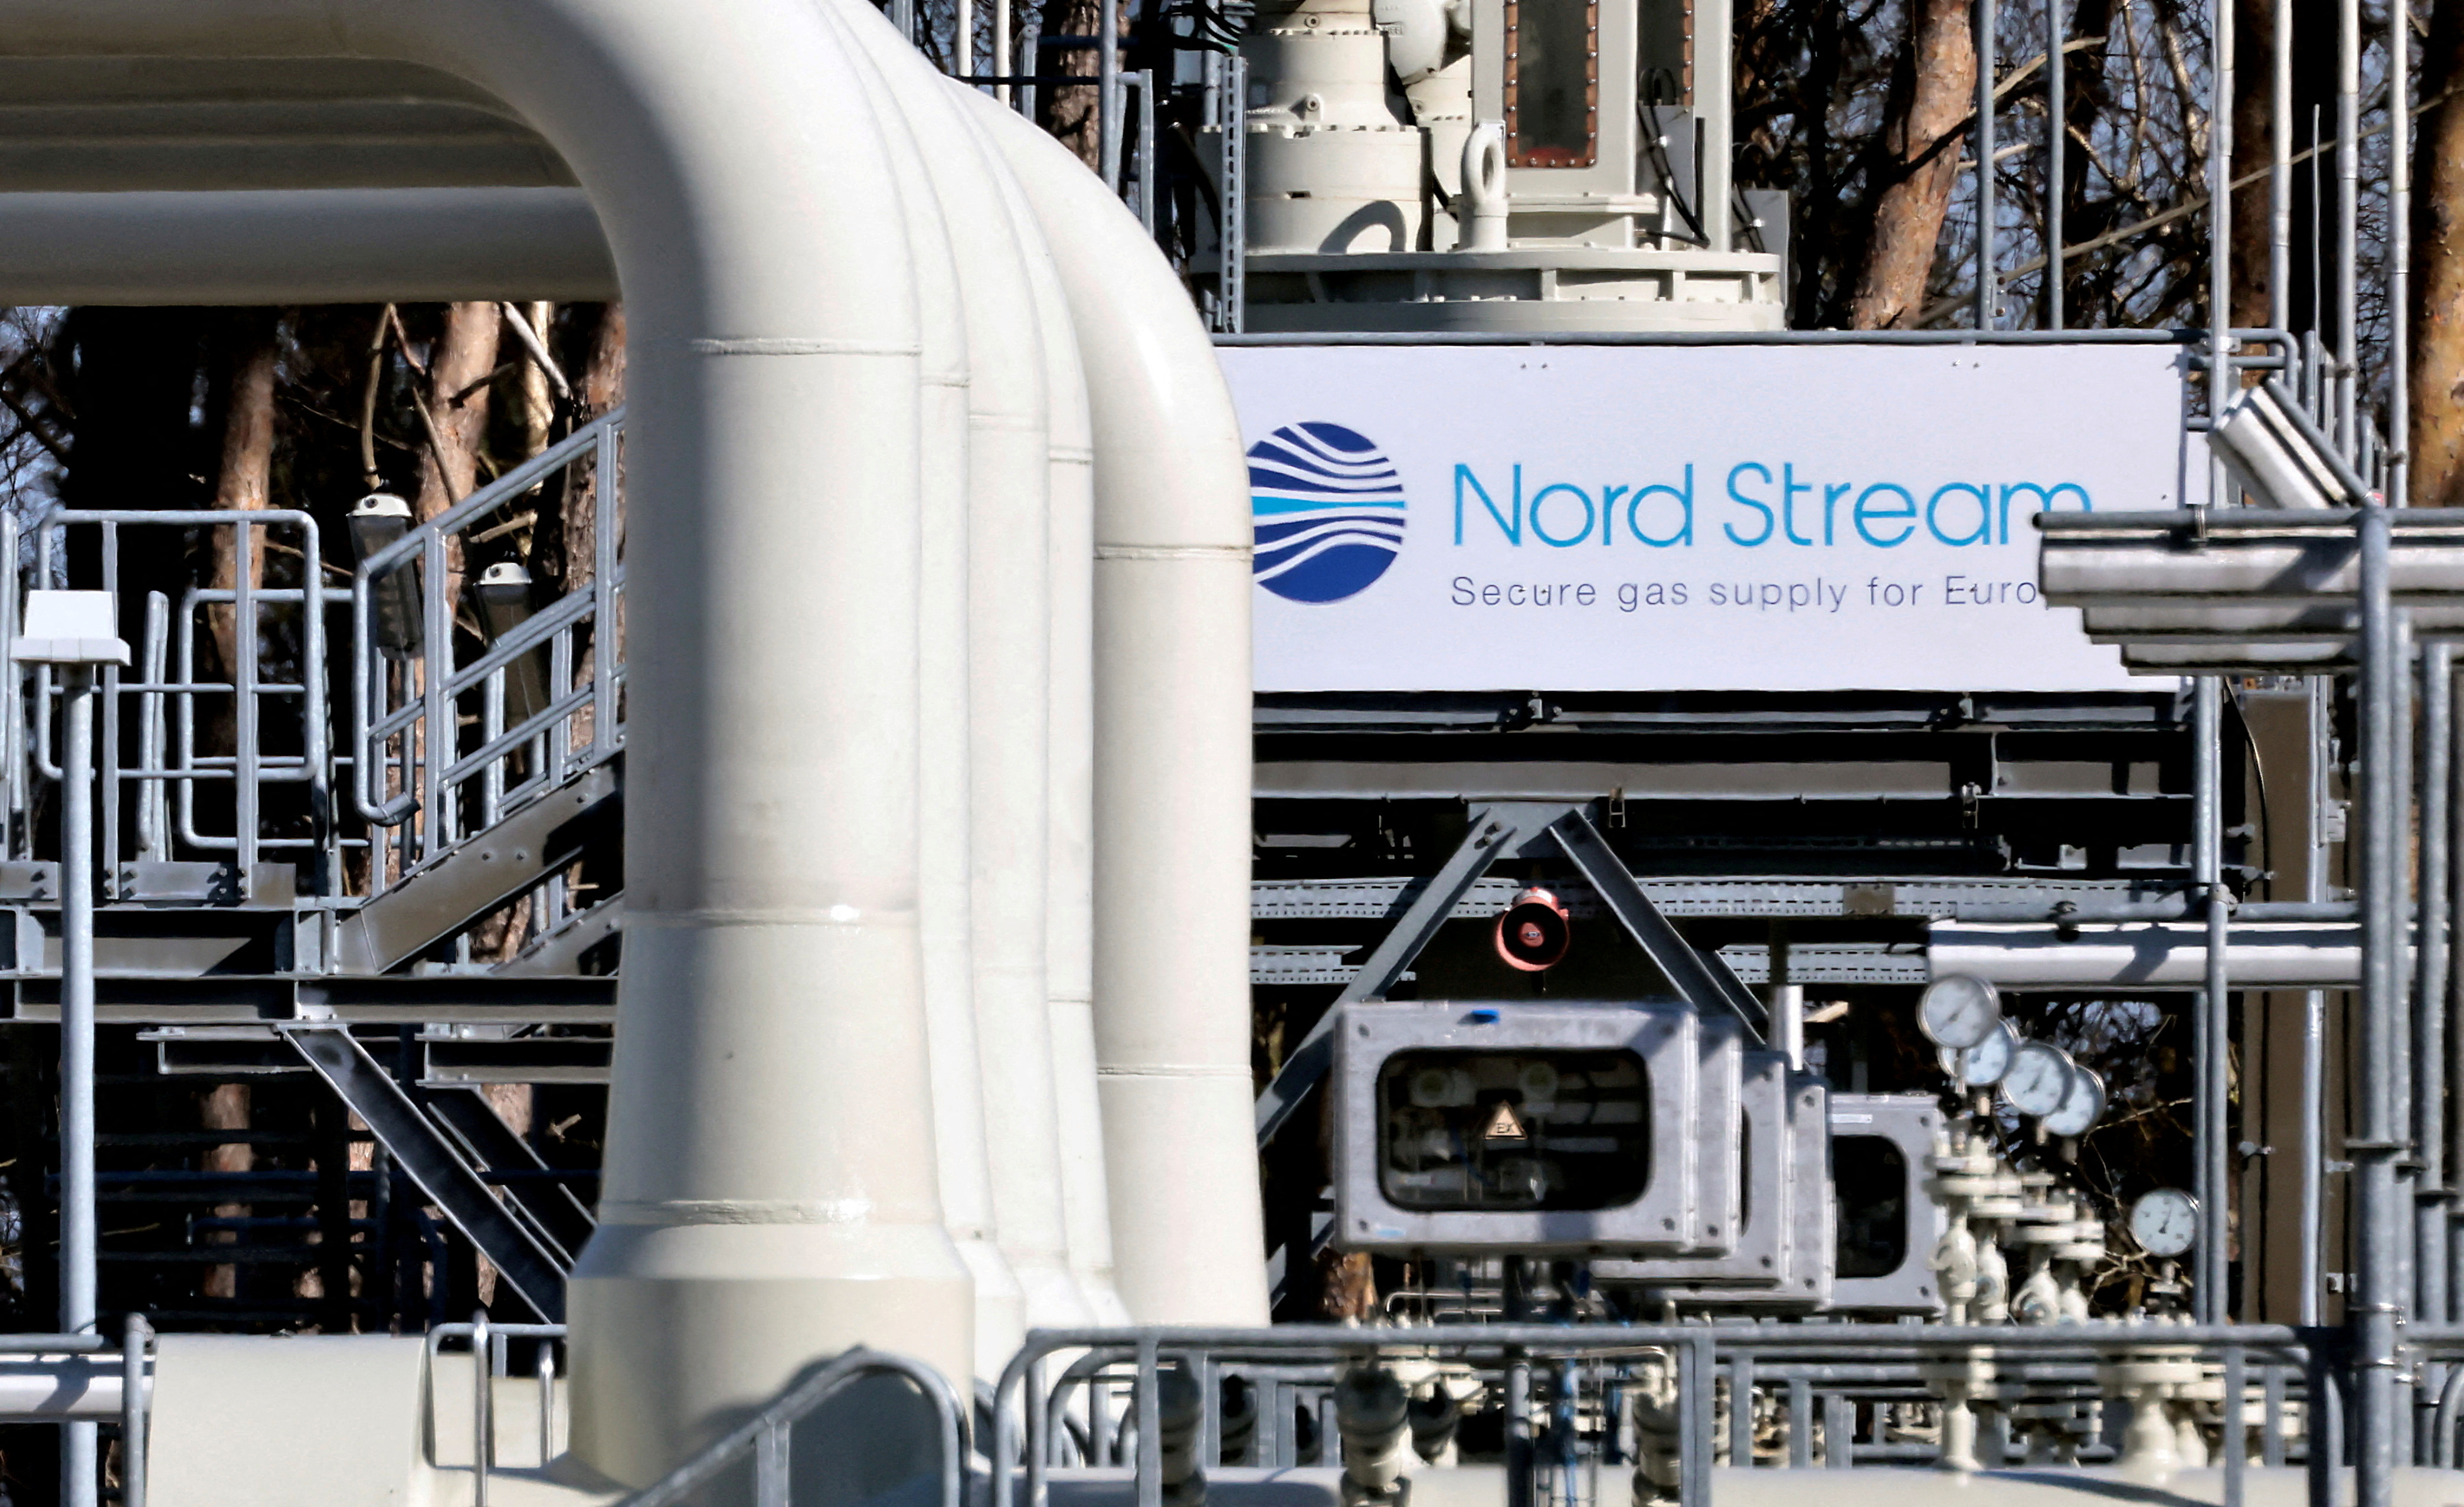 Gazoduc Nord Stream 1 : la Russie prétend ne pas pouvoir récupérer une turbine « essentielle » à cause des sanctions